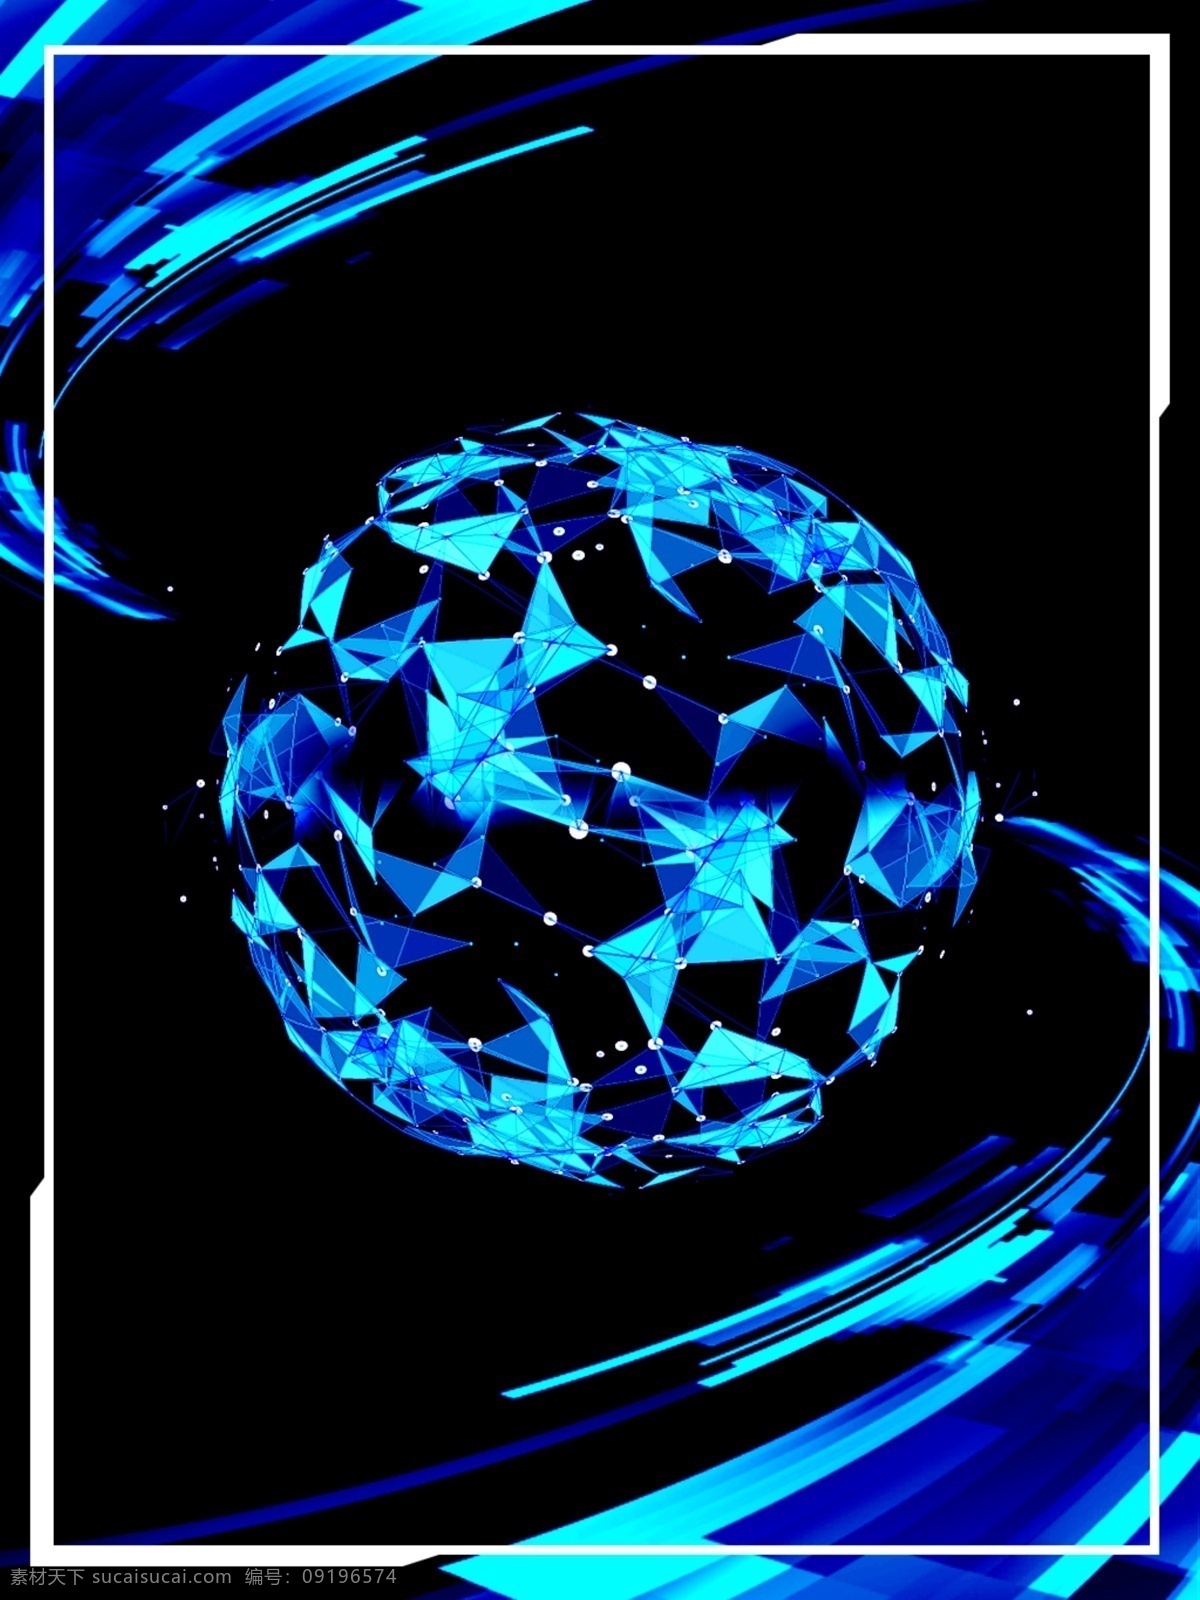 蓝色 科技 世界地图 地球 酷 炫 背景 蓝色背景 背景素材 边框 地图 背景设计 科技背景 创意背景 光 电子 数码 科幻